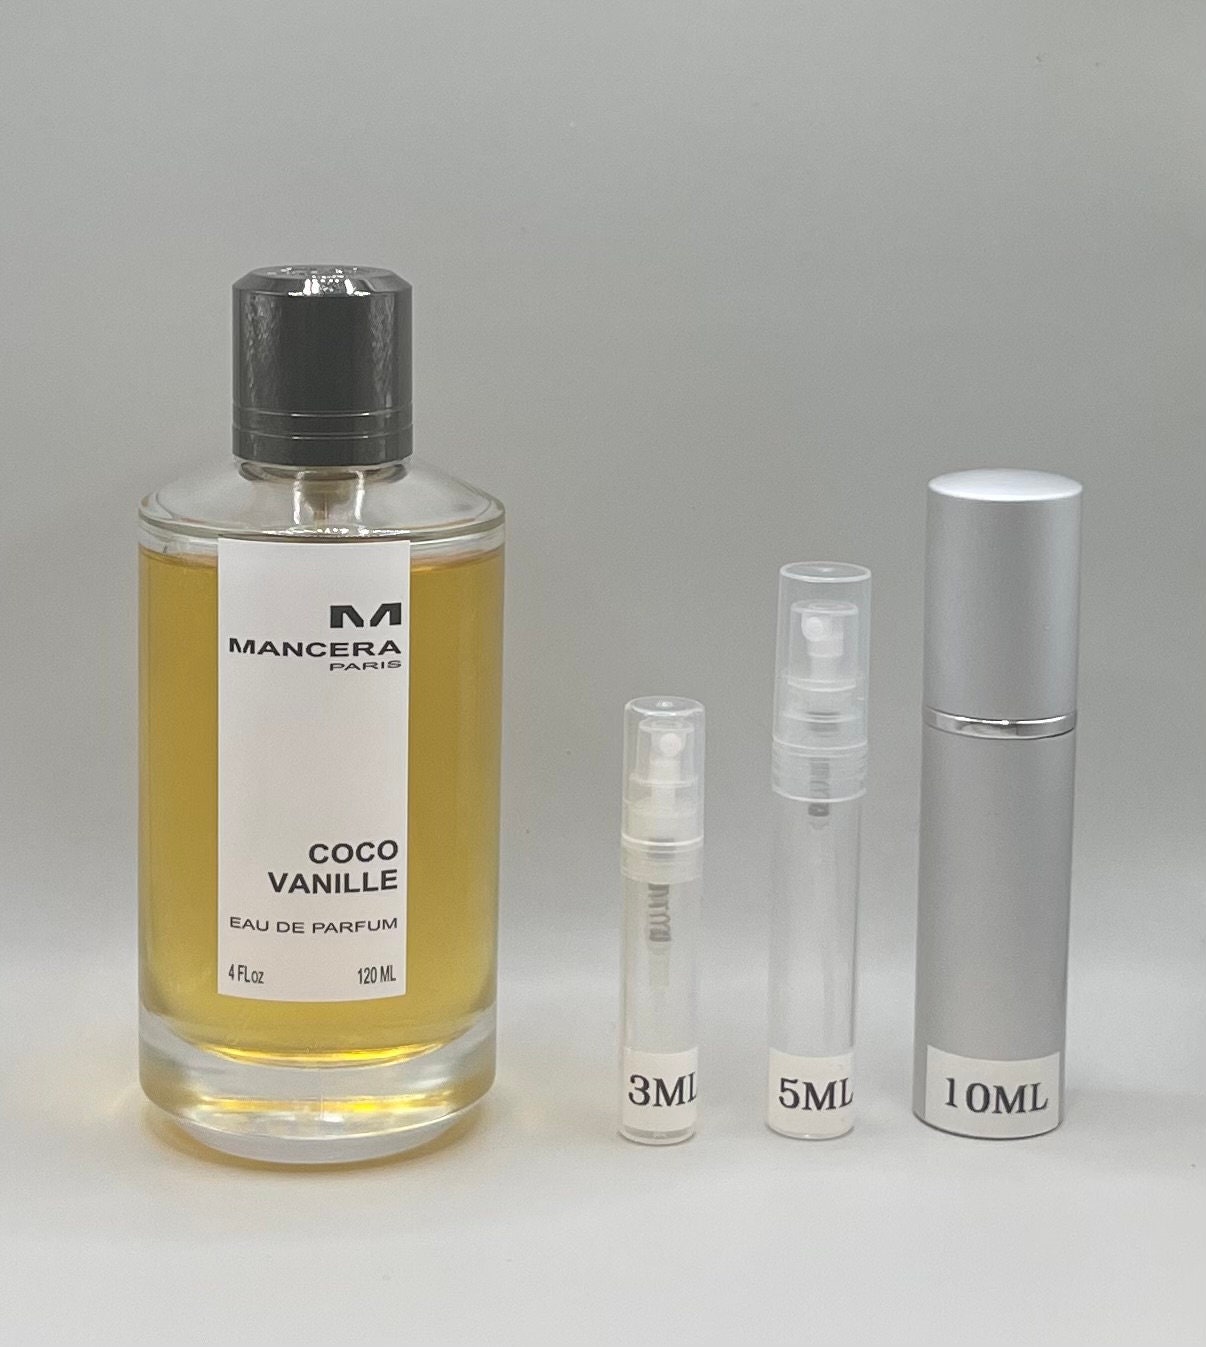 Mancera Coco Vanille Eau de Parfum- 3ml 5ml 10ml - Travel Size Sample  Decant Bottle